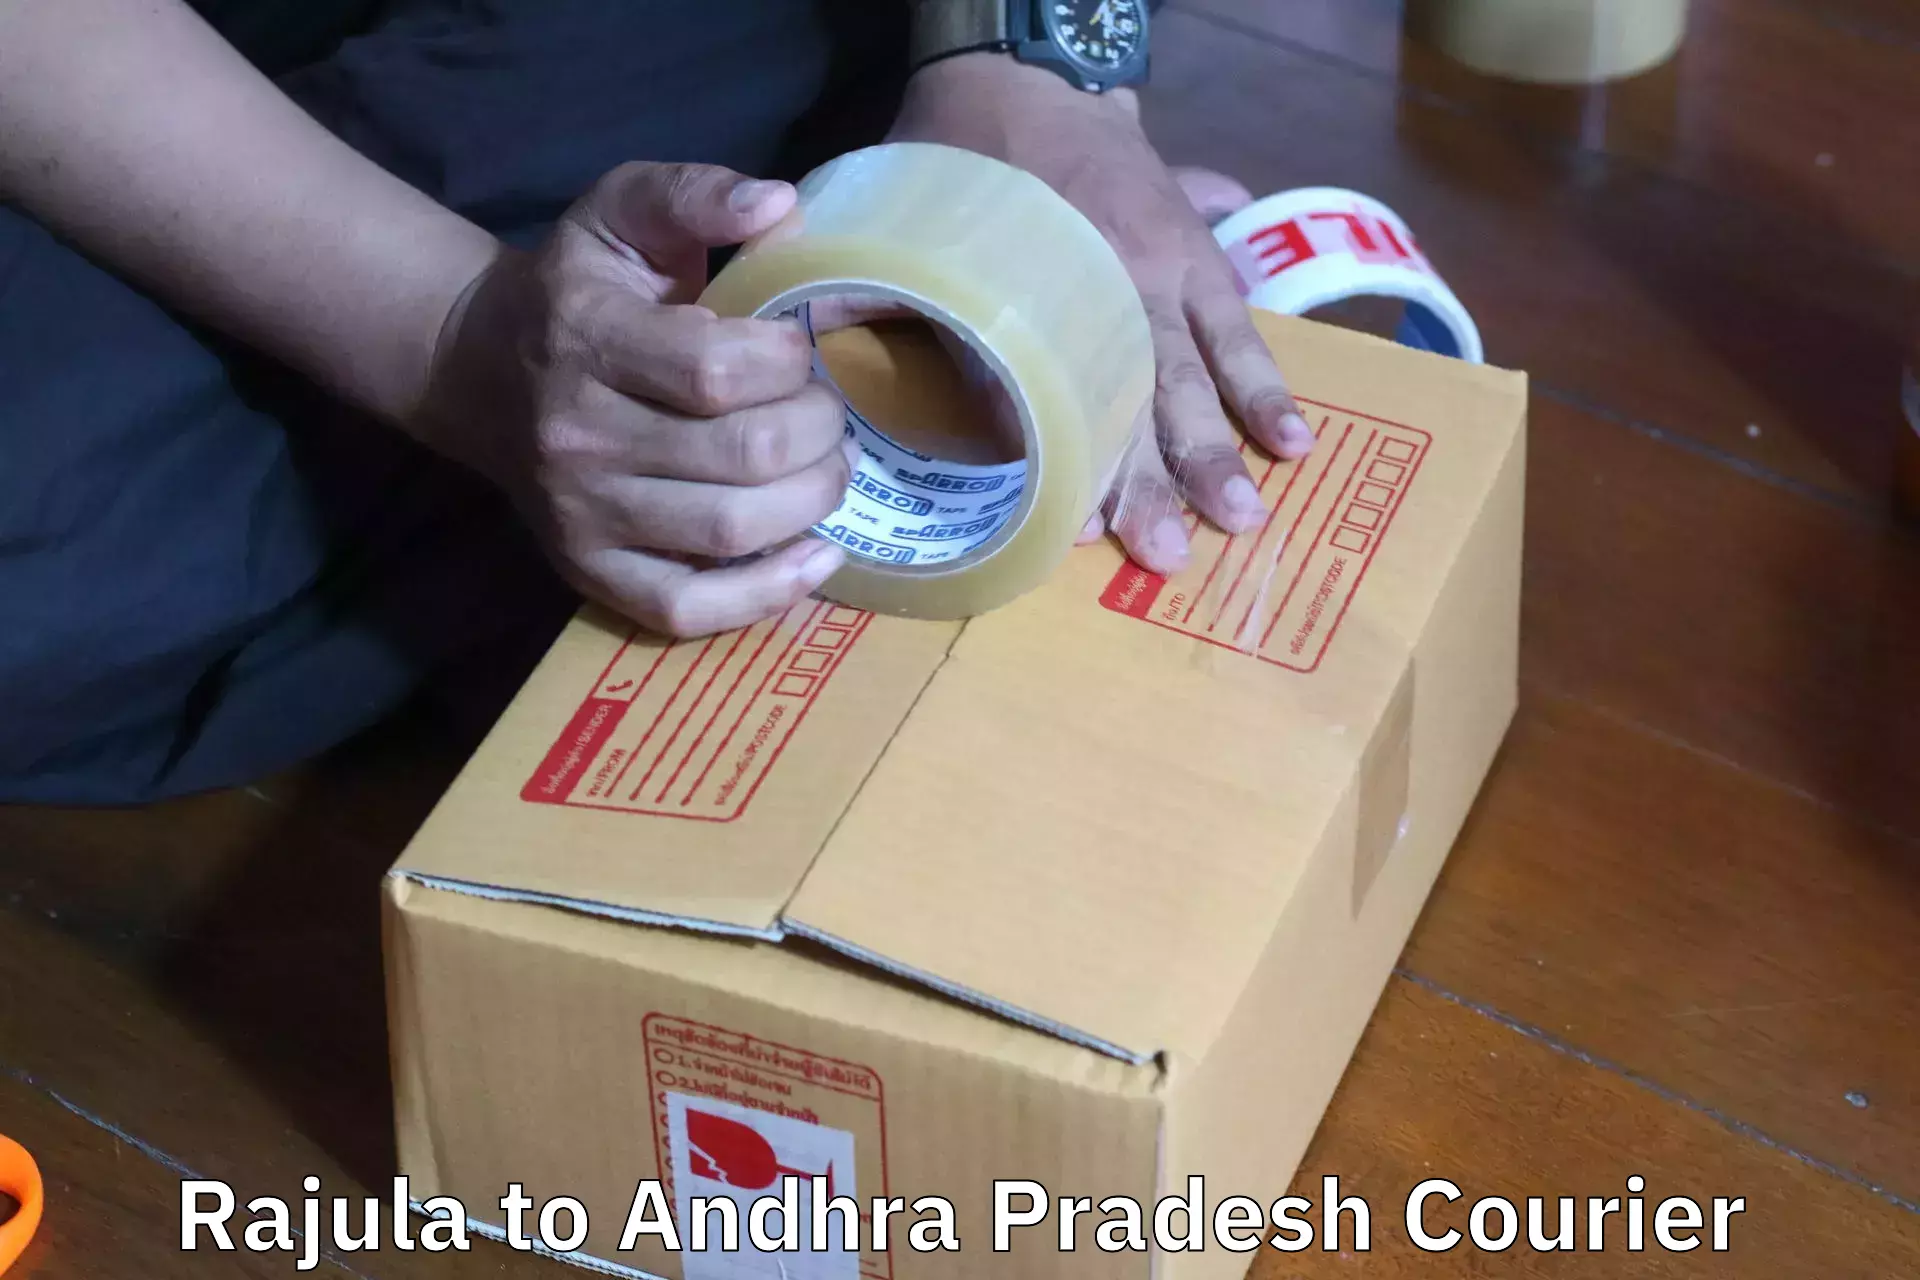 Furniture moving experts Rajula to Kathipudi